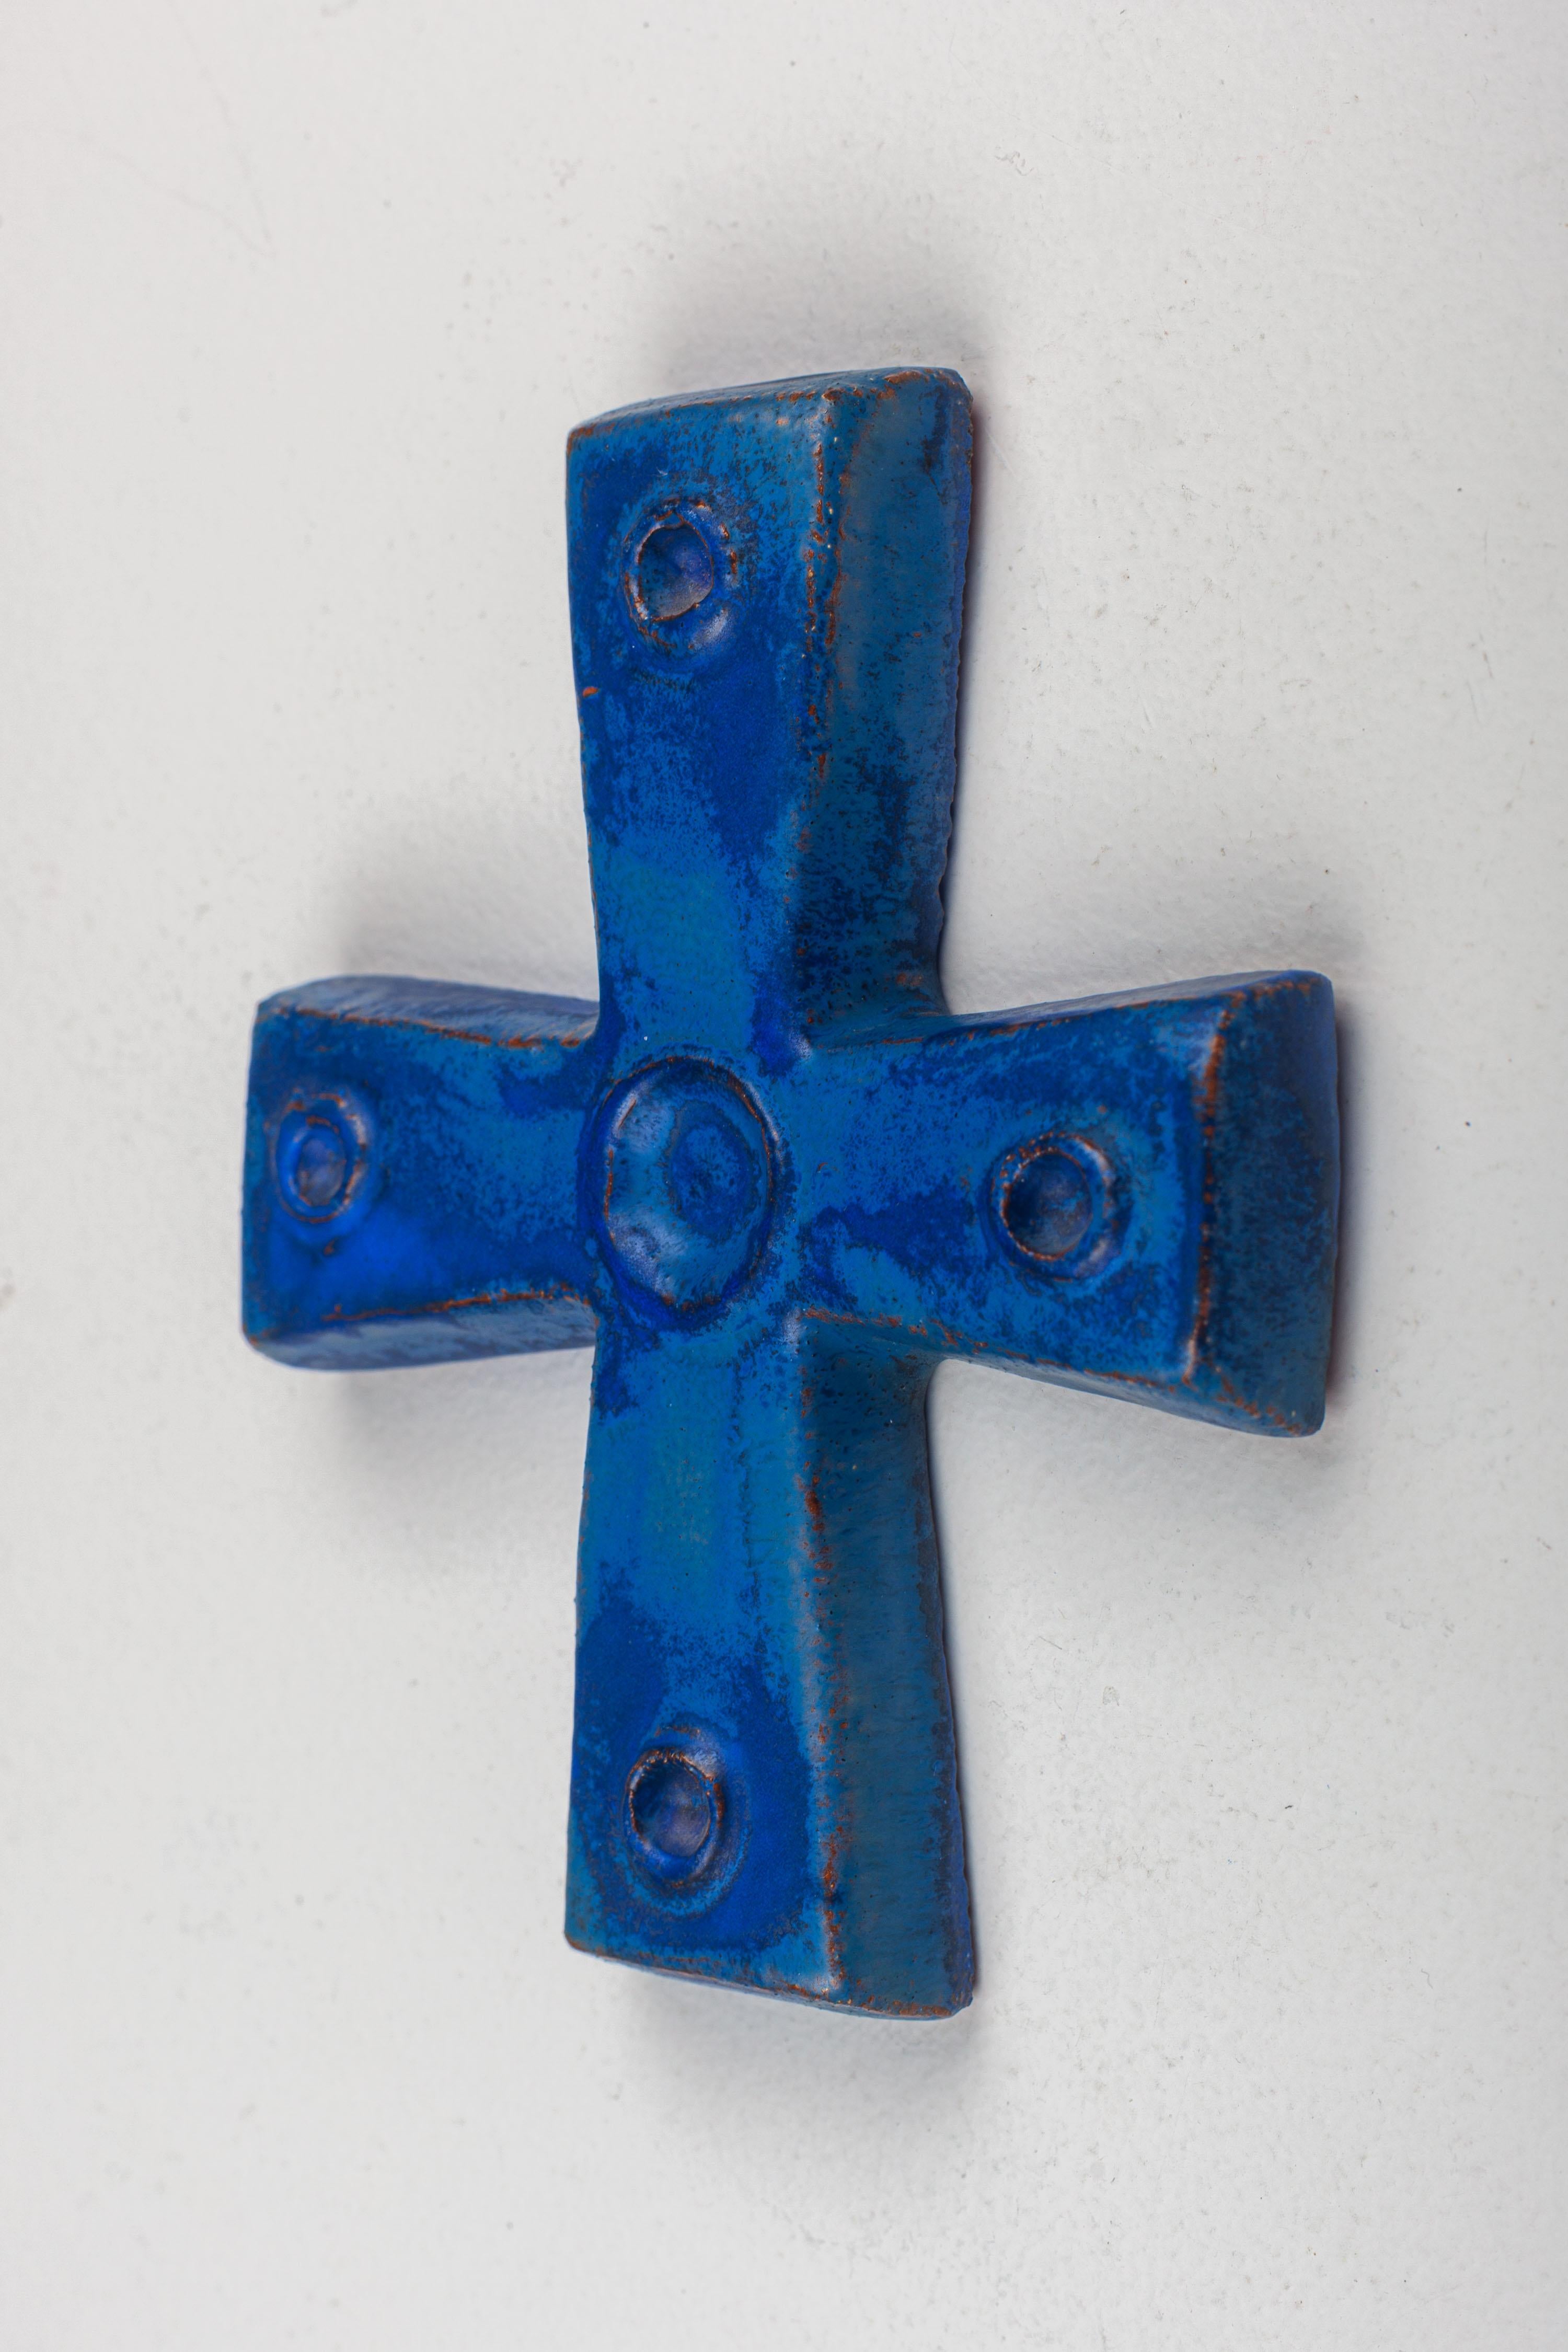 Une croix en céramique du milieu du siècle réalisée par un artisan flamand dans un bleu Klein profond et lumineux. Chaque pointe de la croix et son centre sont ornés d'embellissements circulaires en relief creux, ajoutant des couches d'intrigue